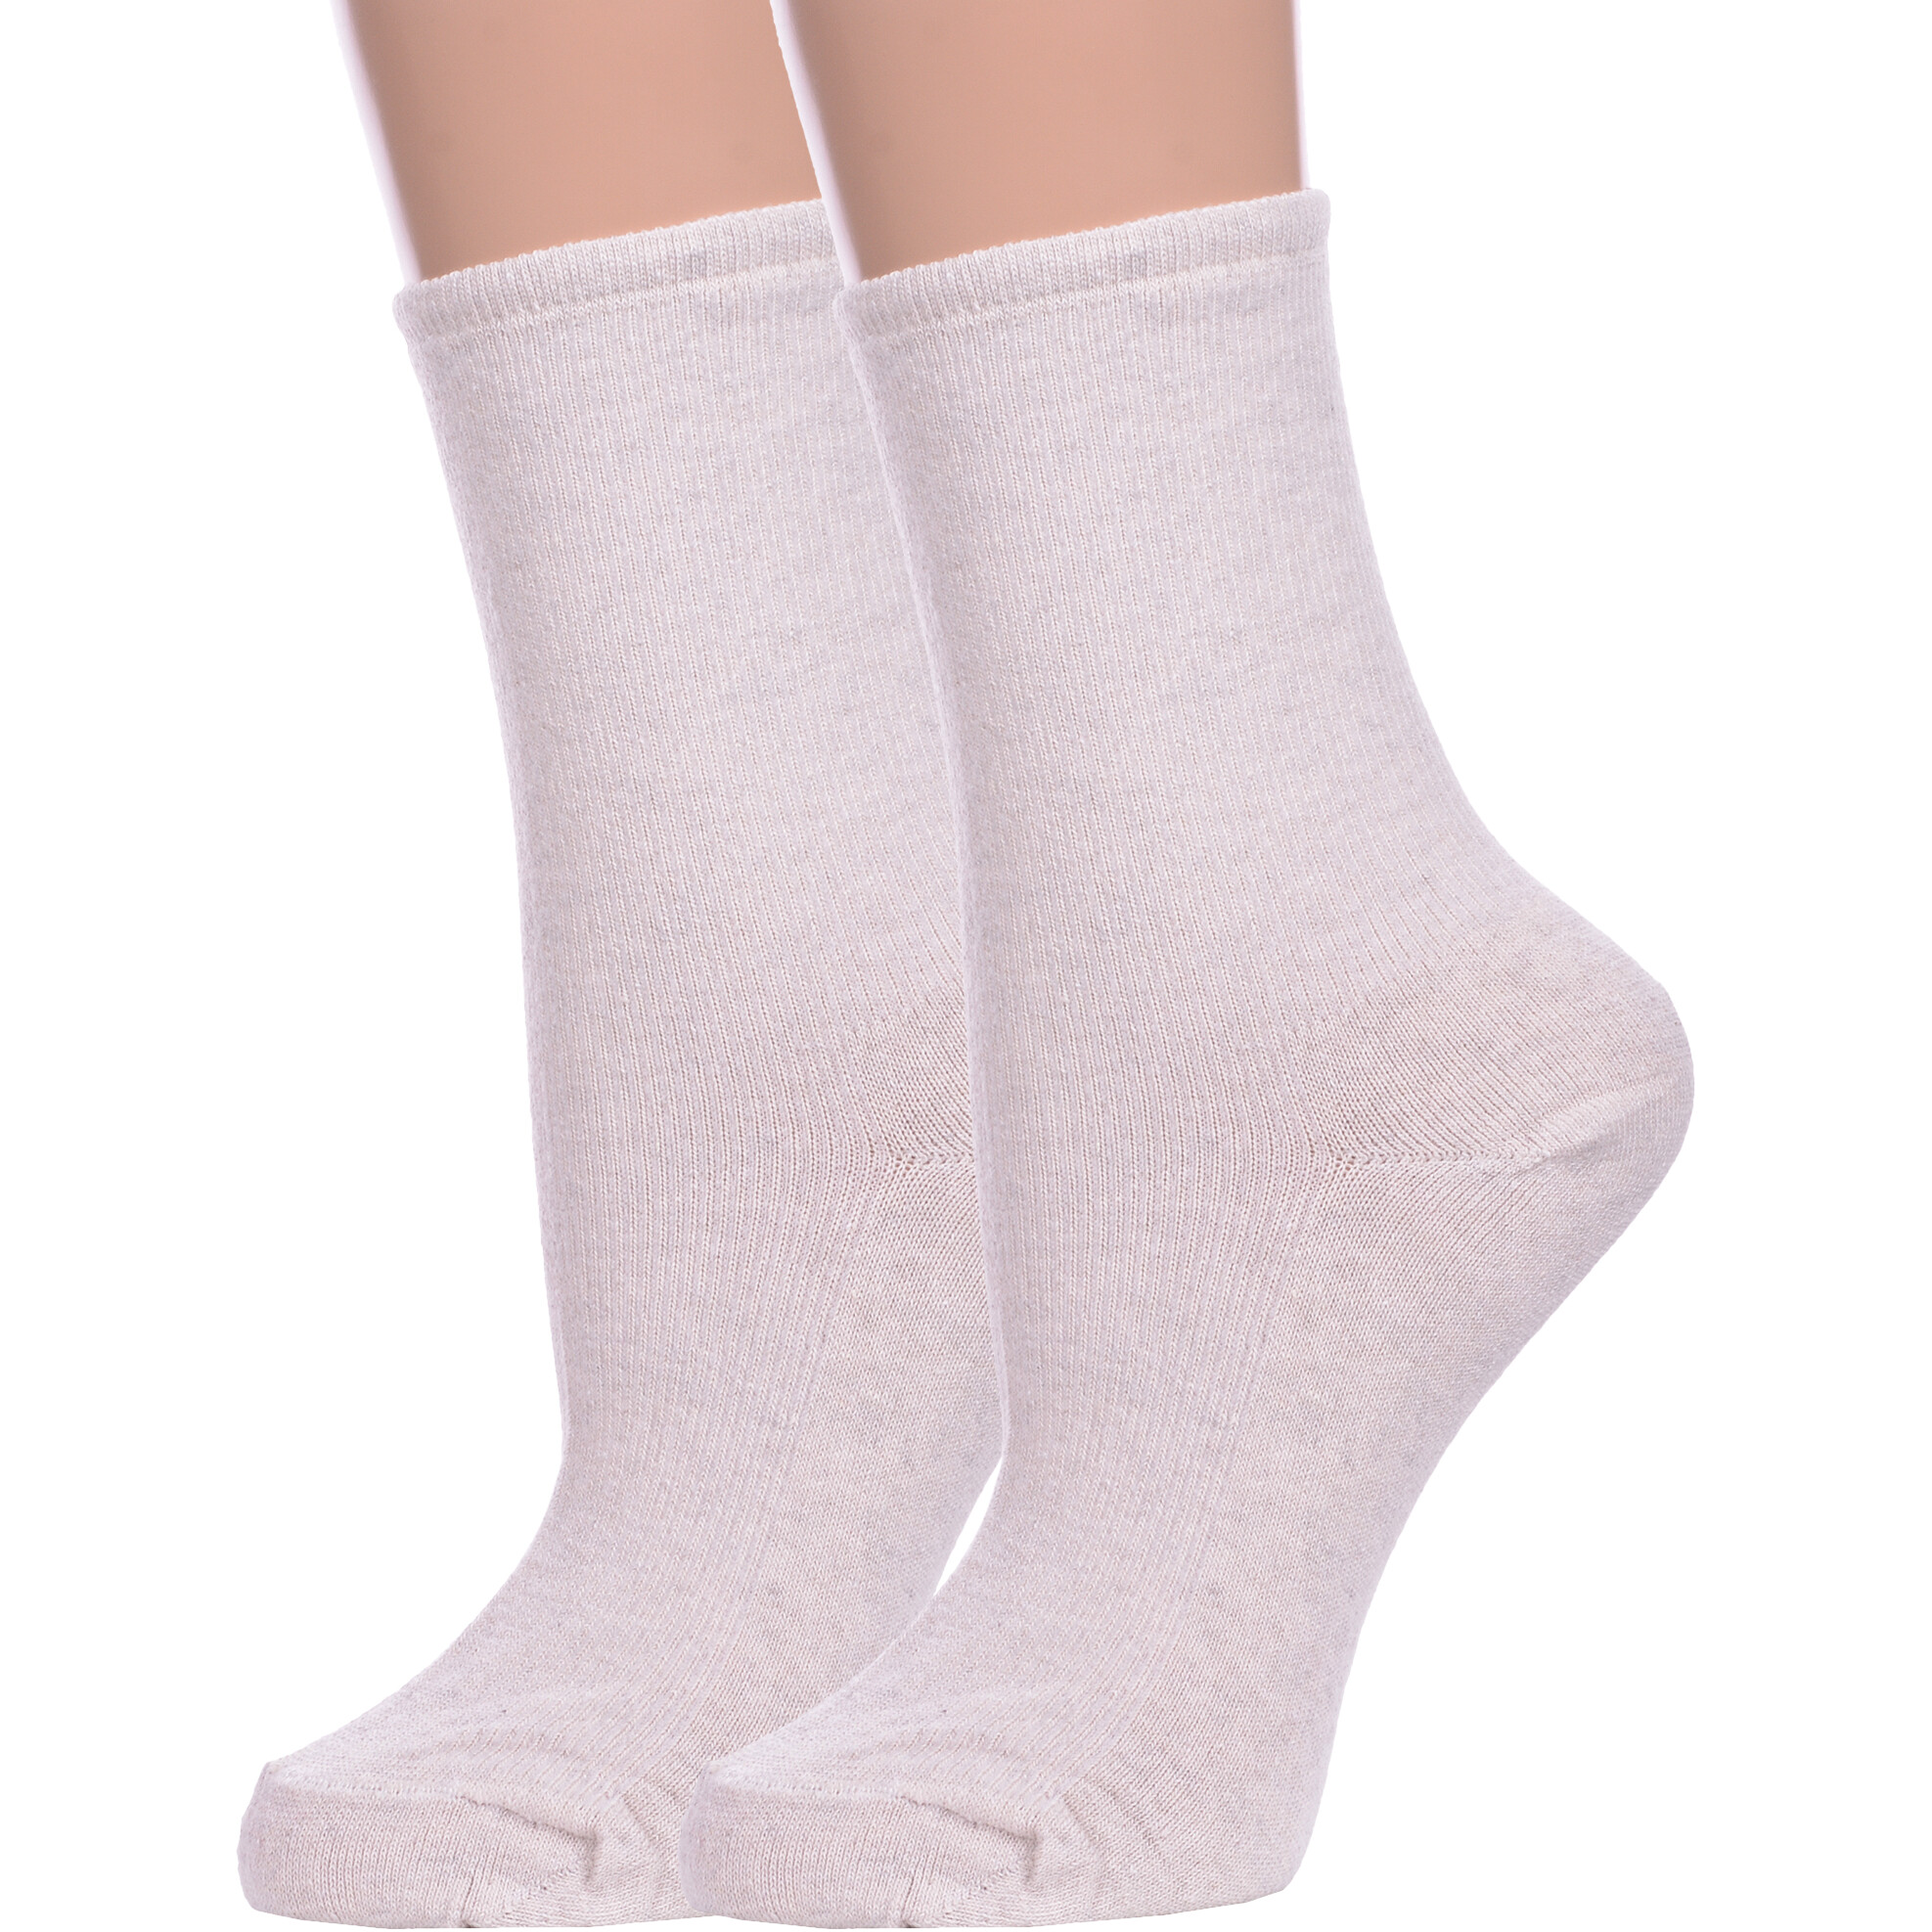 Комплект носков женских Альтаир 2-М198 бежевых 25 2 пары